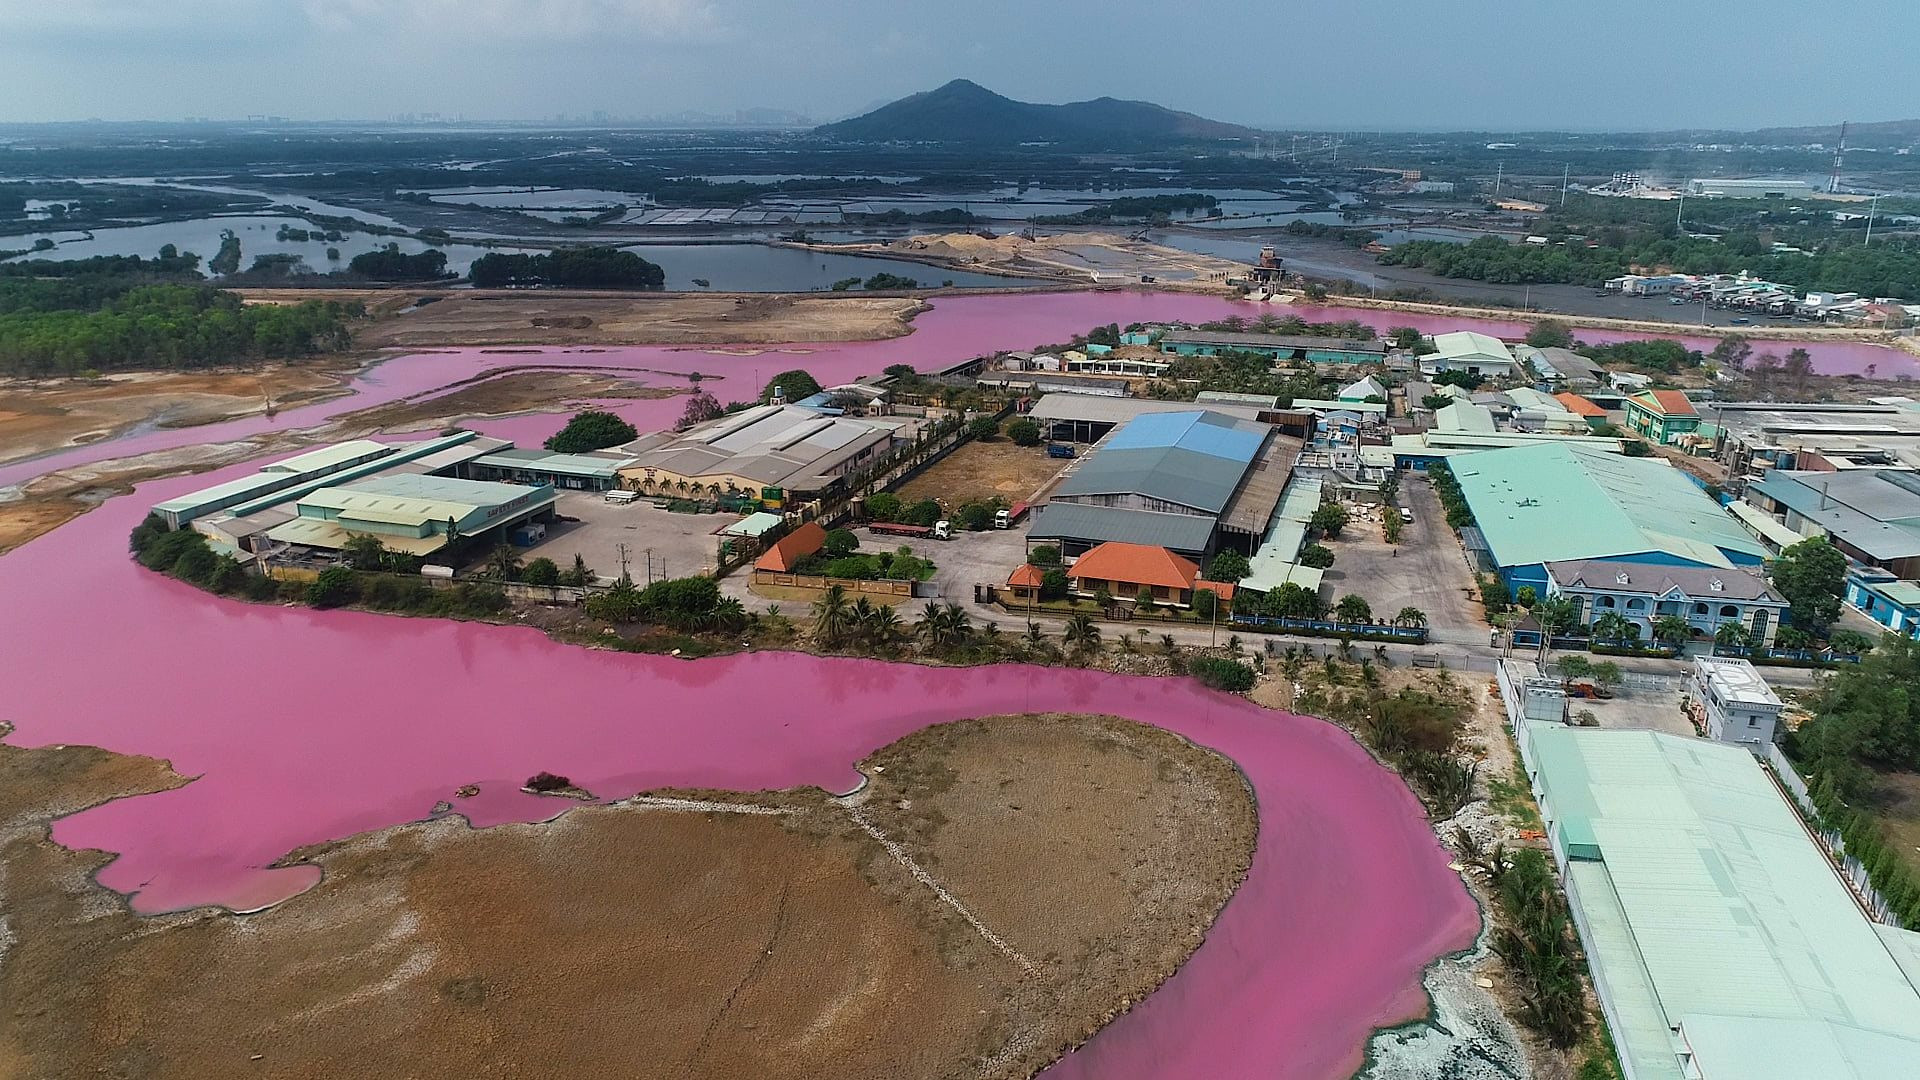 Hồ điều tiết lũ rộng khoảng 10 ha nằm cạnh các nhà máy chế biến thủy sản ở thị xã Phú Mỹ, tỉnh Bà Rịa - Vũng Tàu chuyển màu hồng tím bất thường.